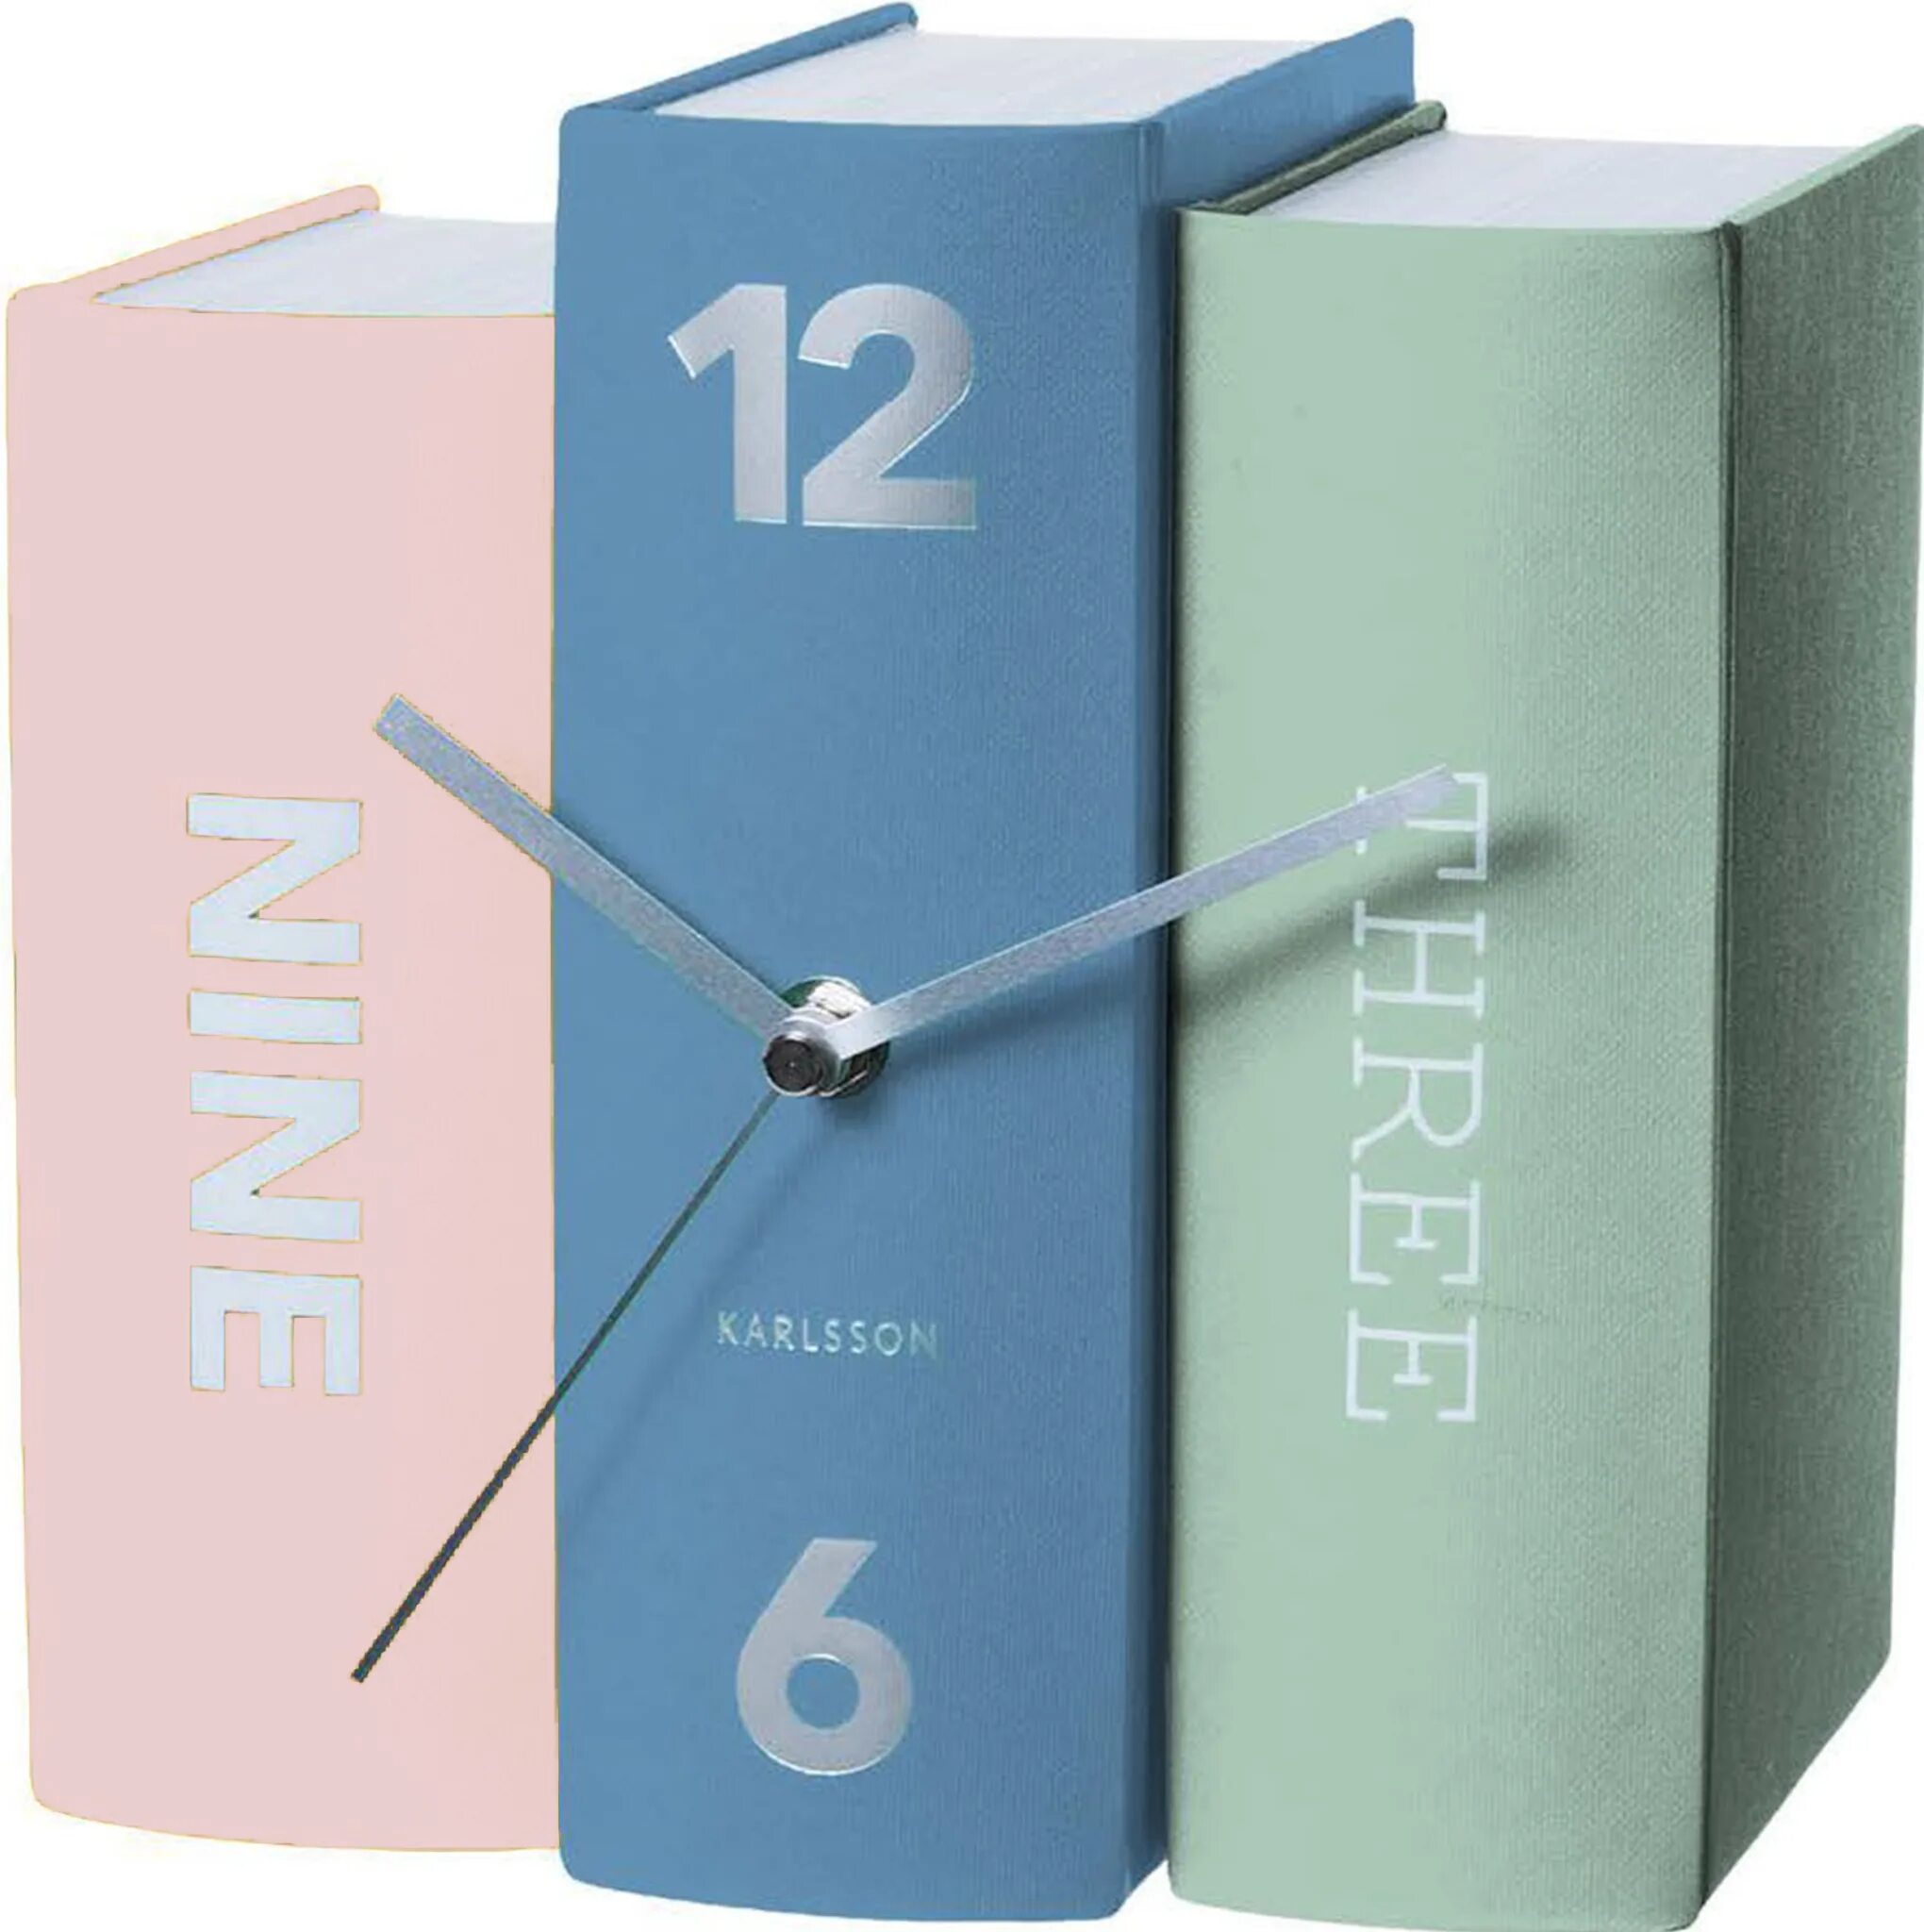 Книга и часы. Часы книжка. Часы в форме книги. Часы из книг.